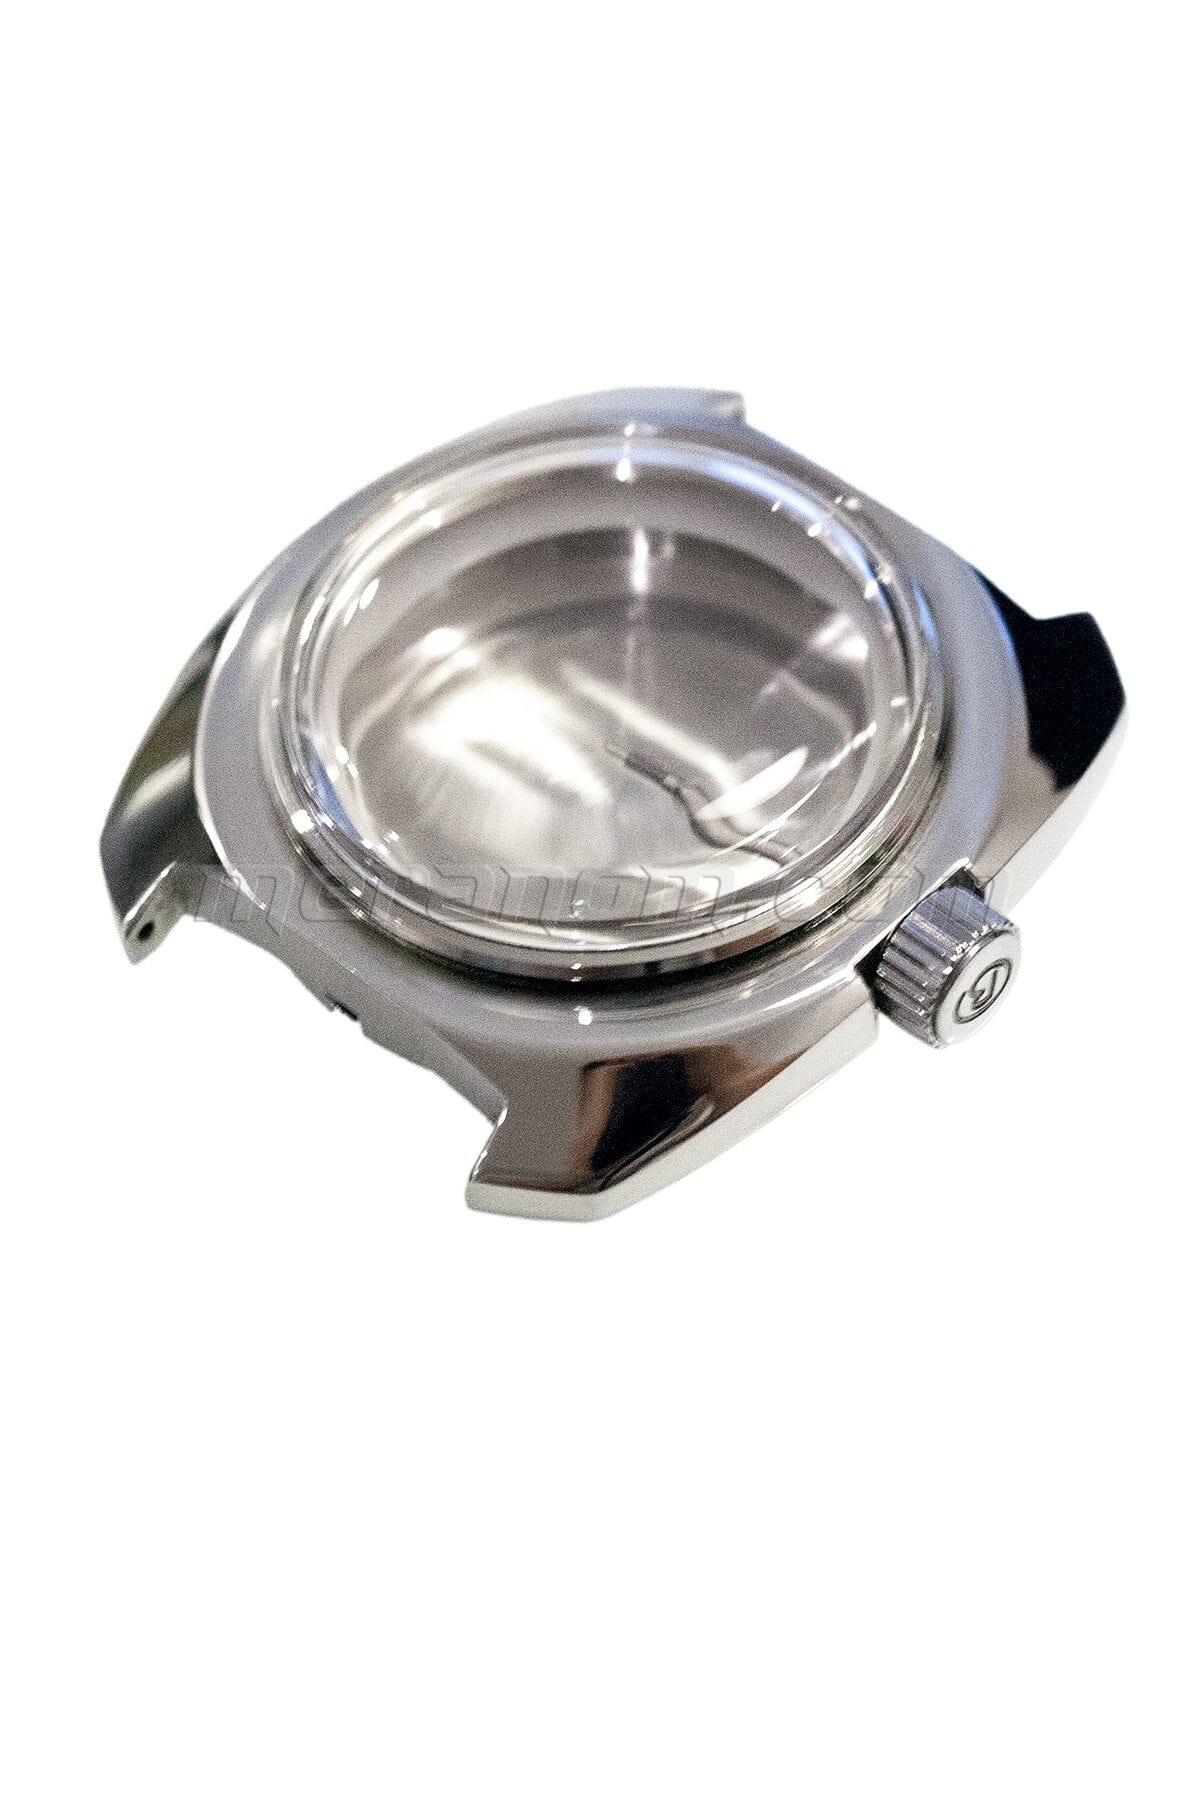 Vostok Watch Case 710 bezel